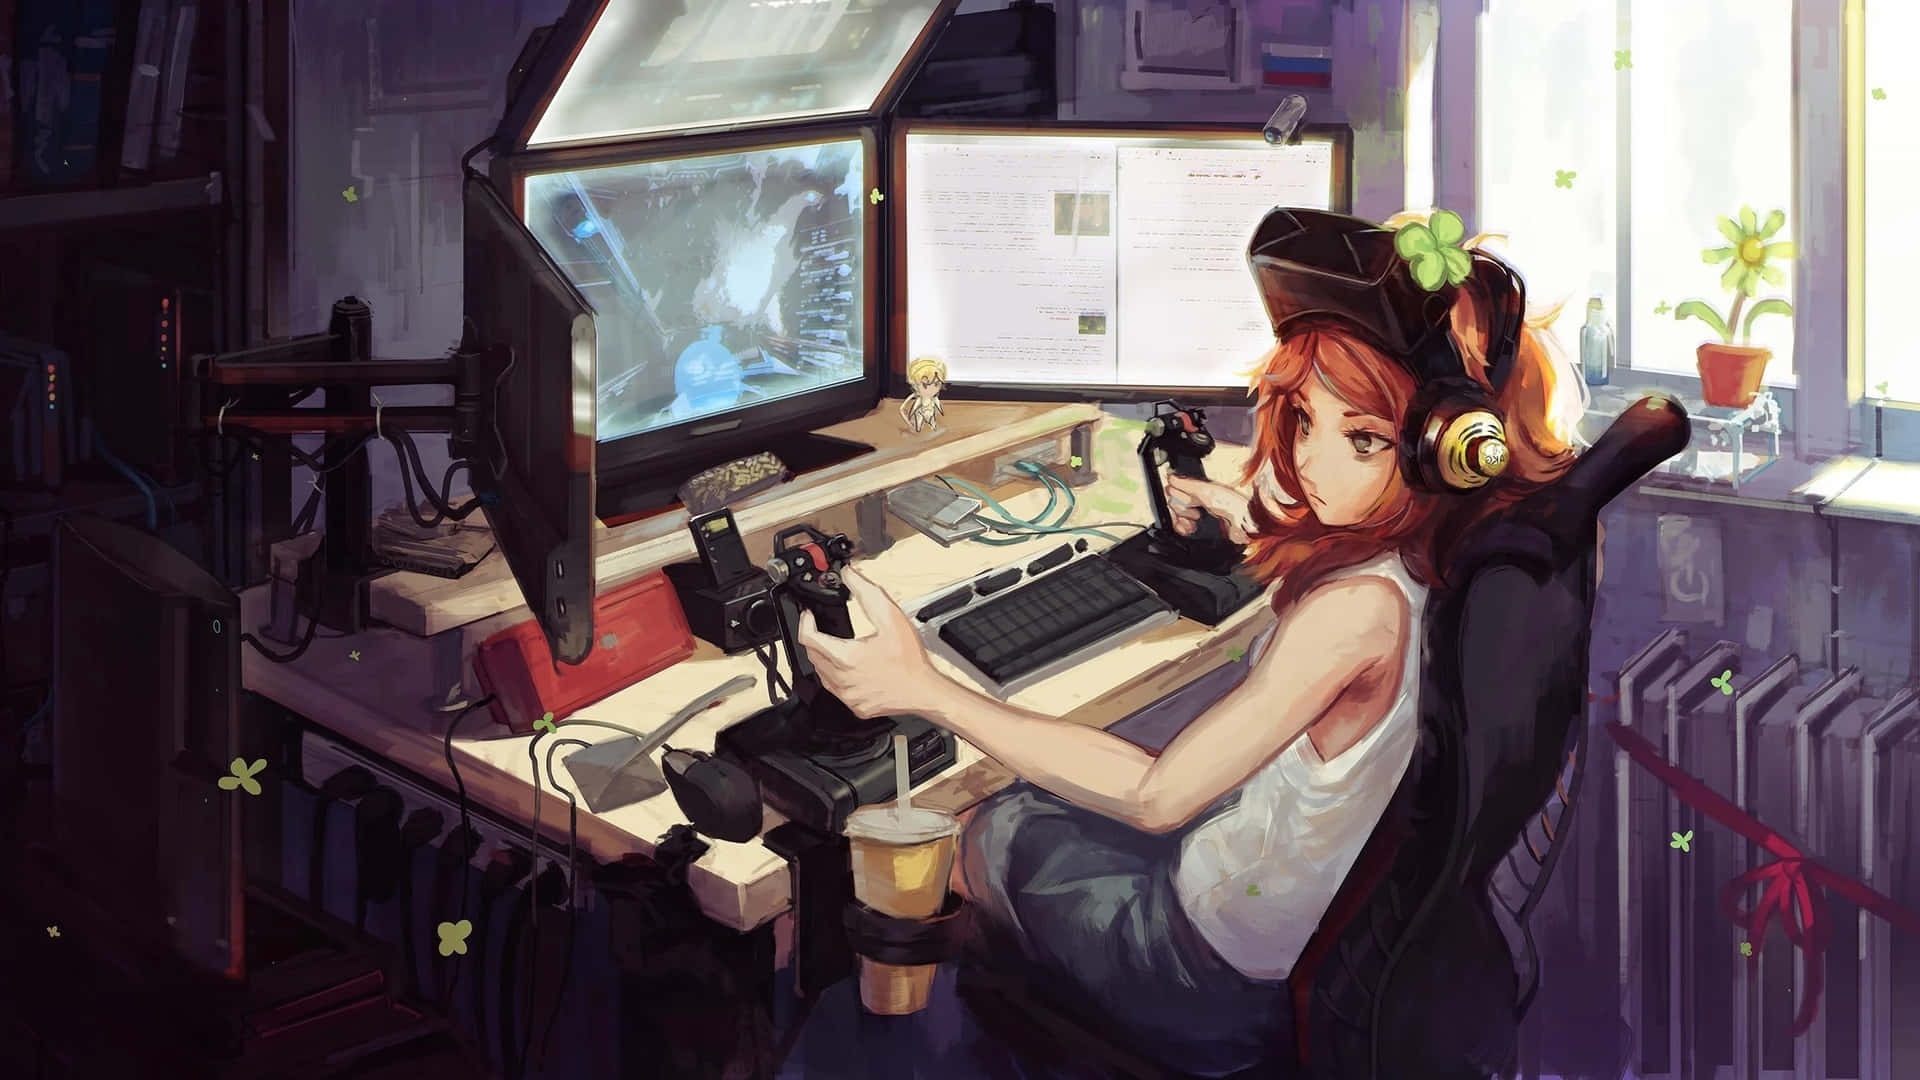 Einmädchen Sitzt An Einem Schreibtisch Mit Einem Computer.